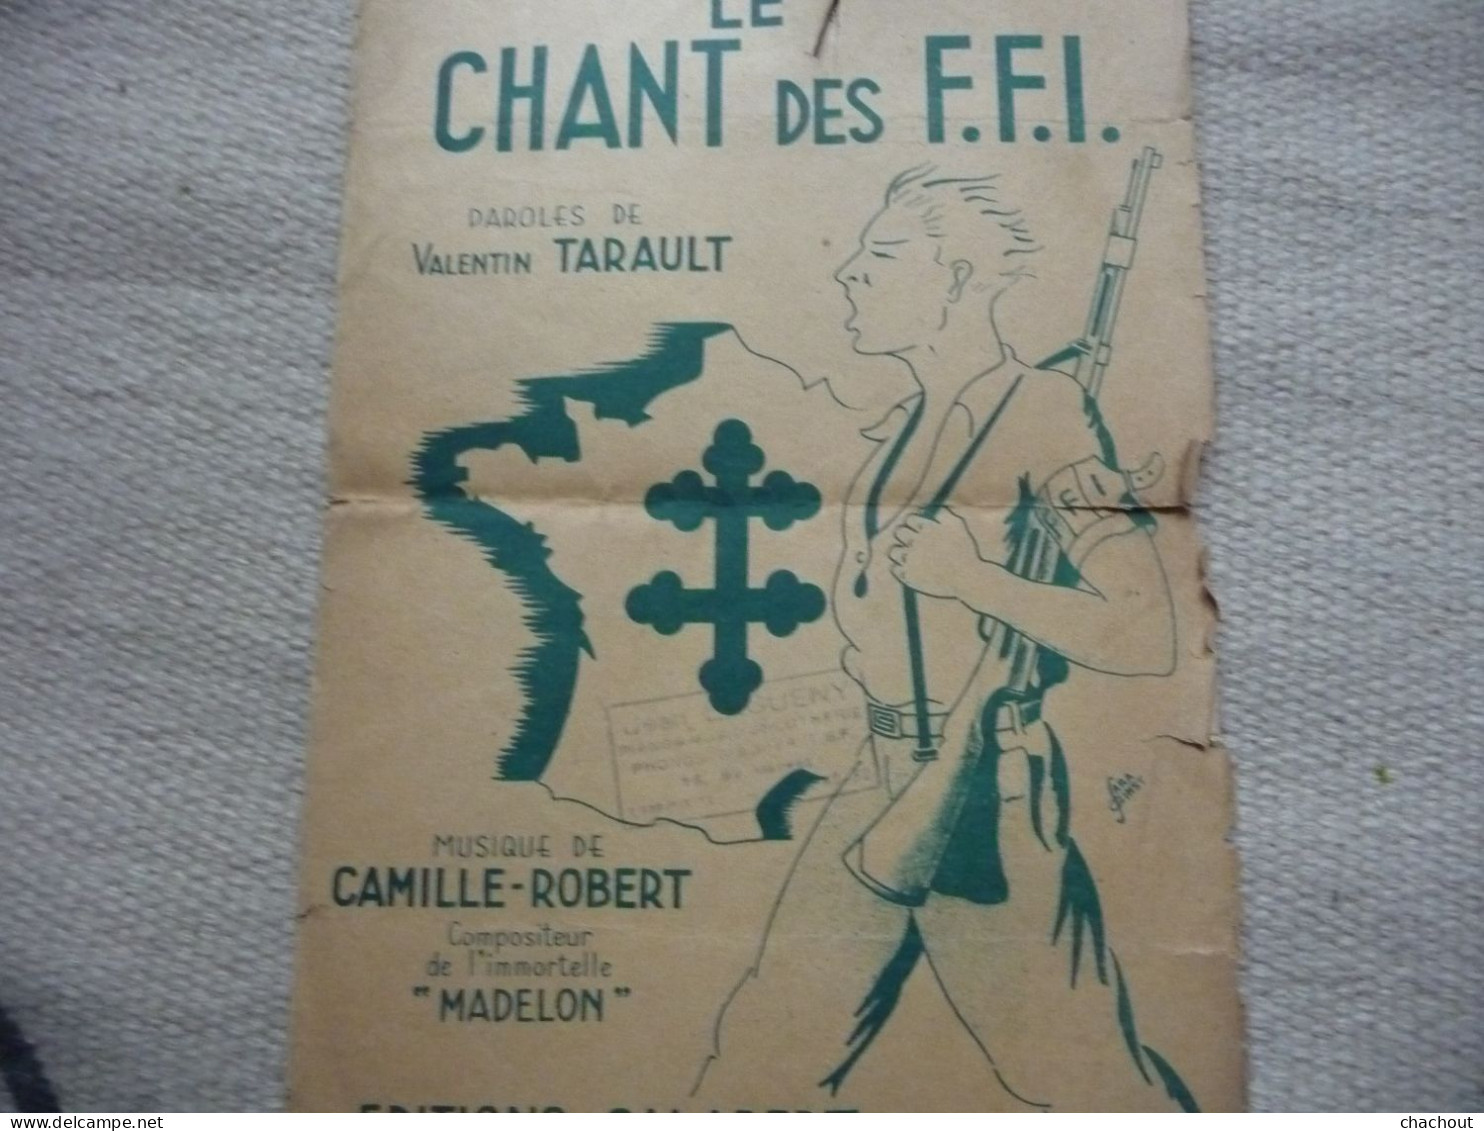 Le Chant Des FFI Paroles De Valentin TARAULT - Documents